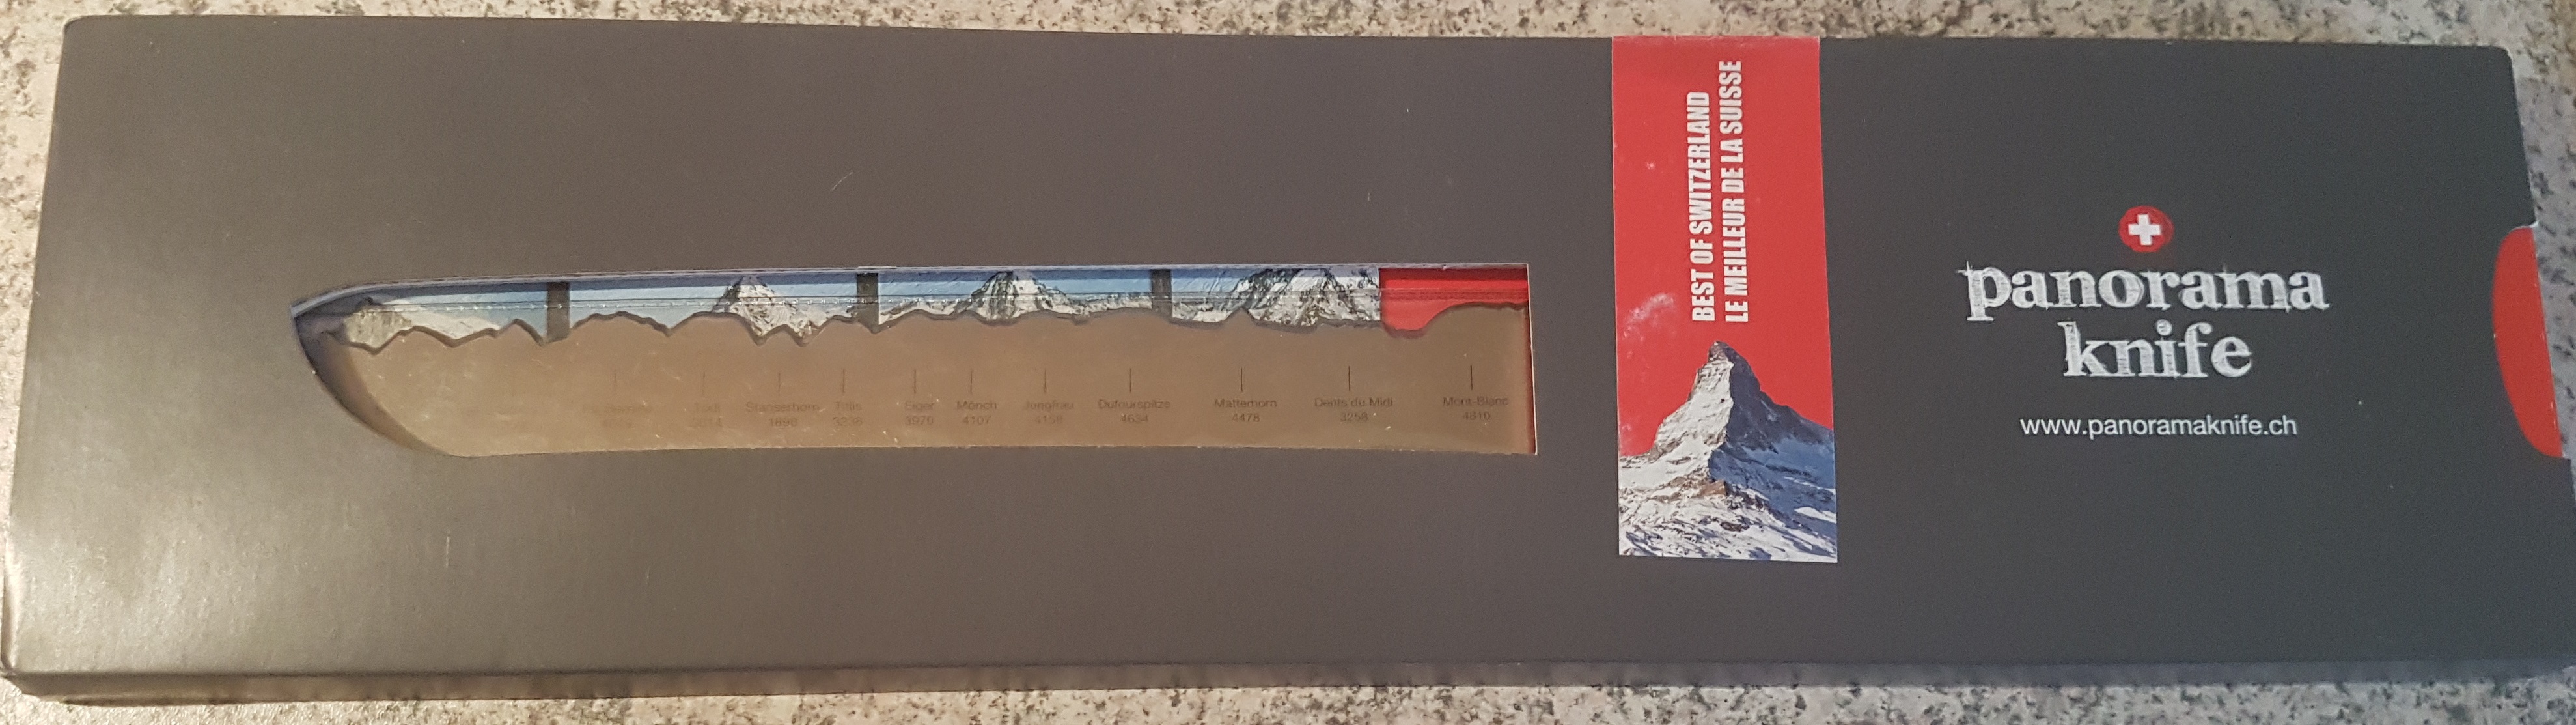 panorama-knife-best-of-switzerland-brotmesser-verpackung